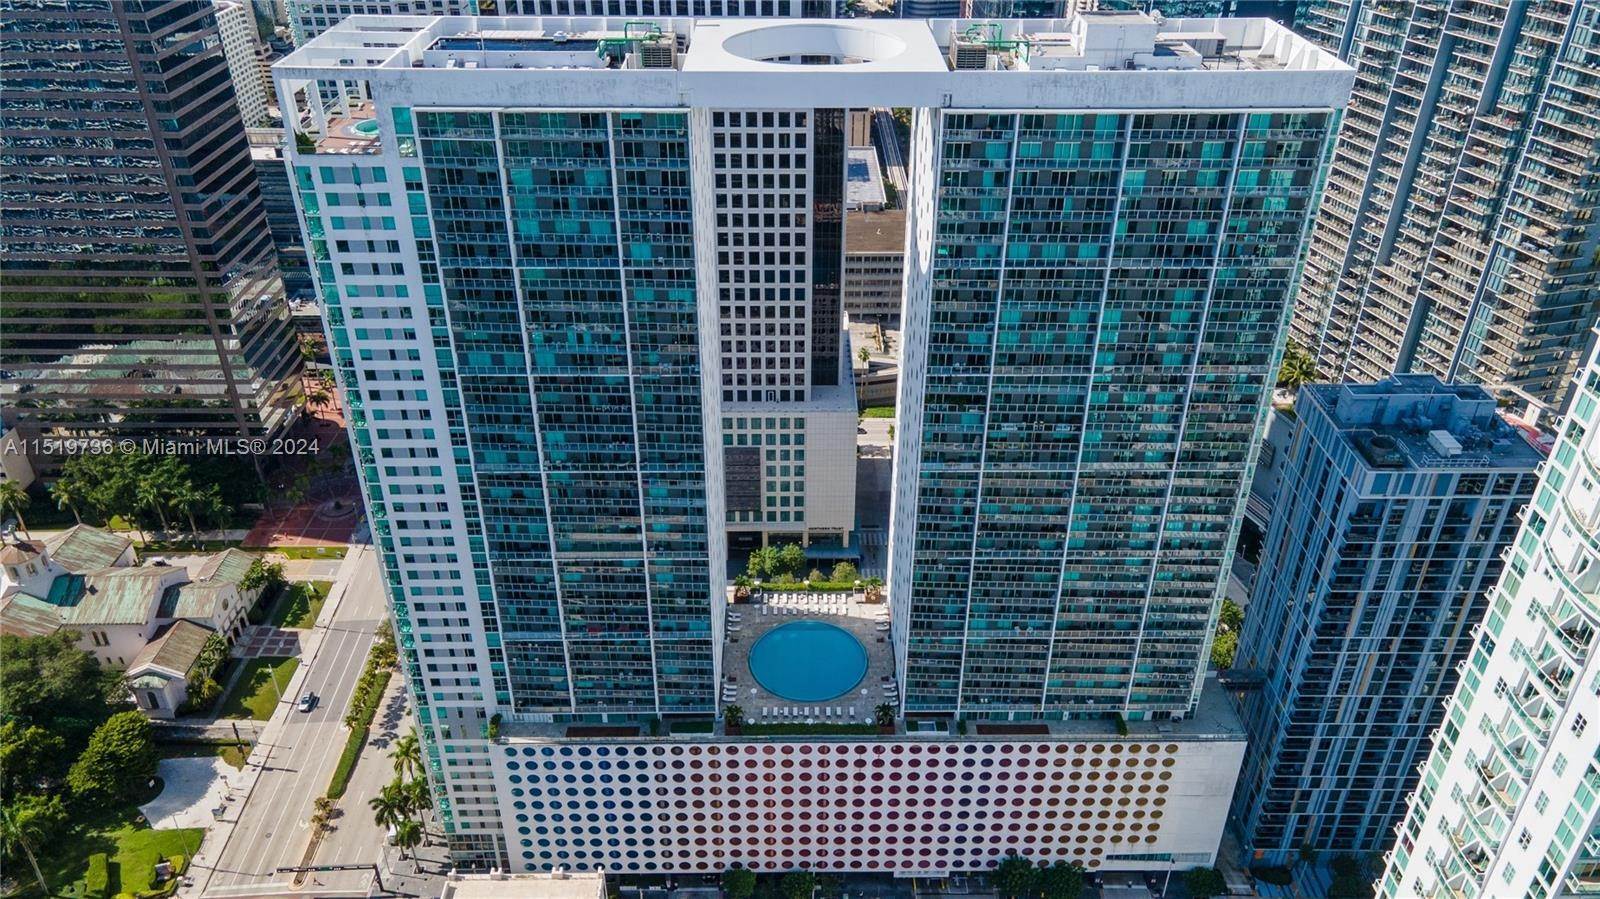 Condominio por un Venta en Brickell, Miami, FL 33131